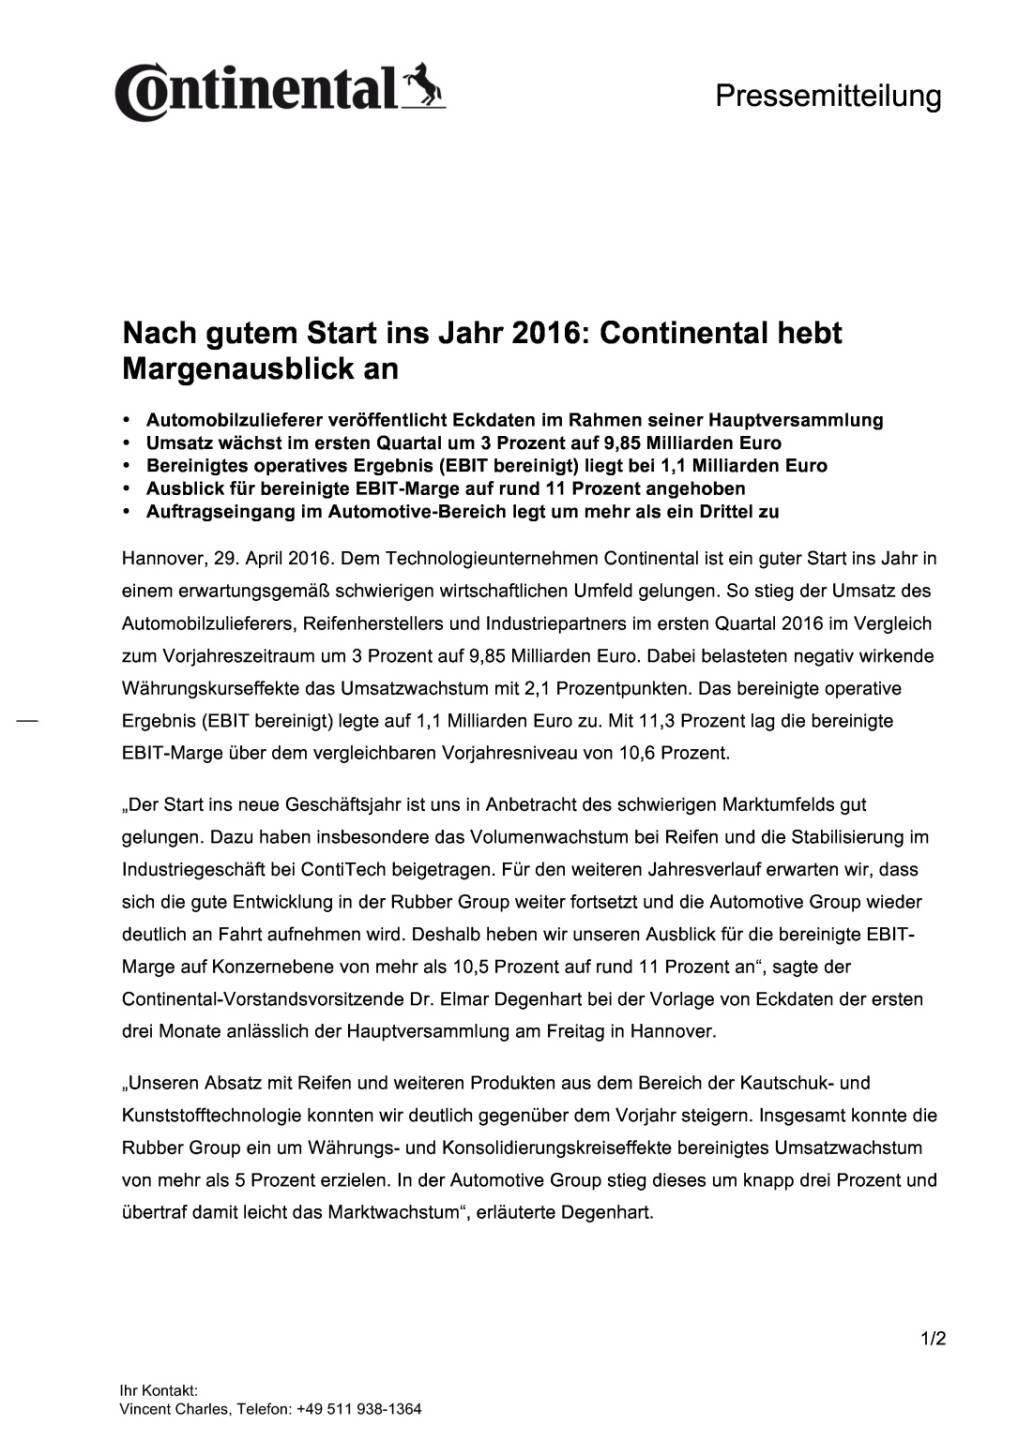 Continental hebt Margenausblick an, Seite 1/2, komplettes Dokument unter http://boerse-social.com/static/uploads/file_974_continental_hebt_margenausblick_an.pdf